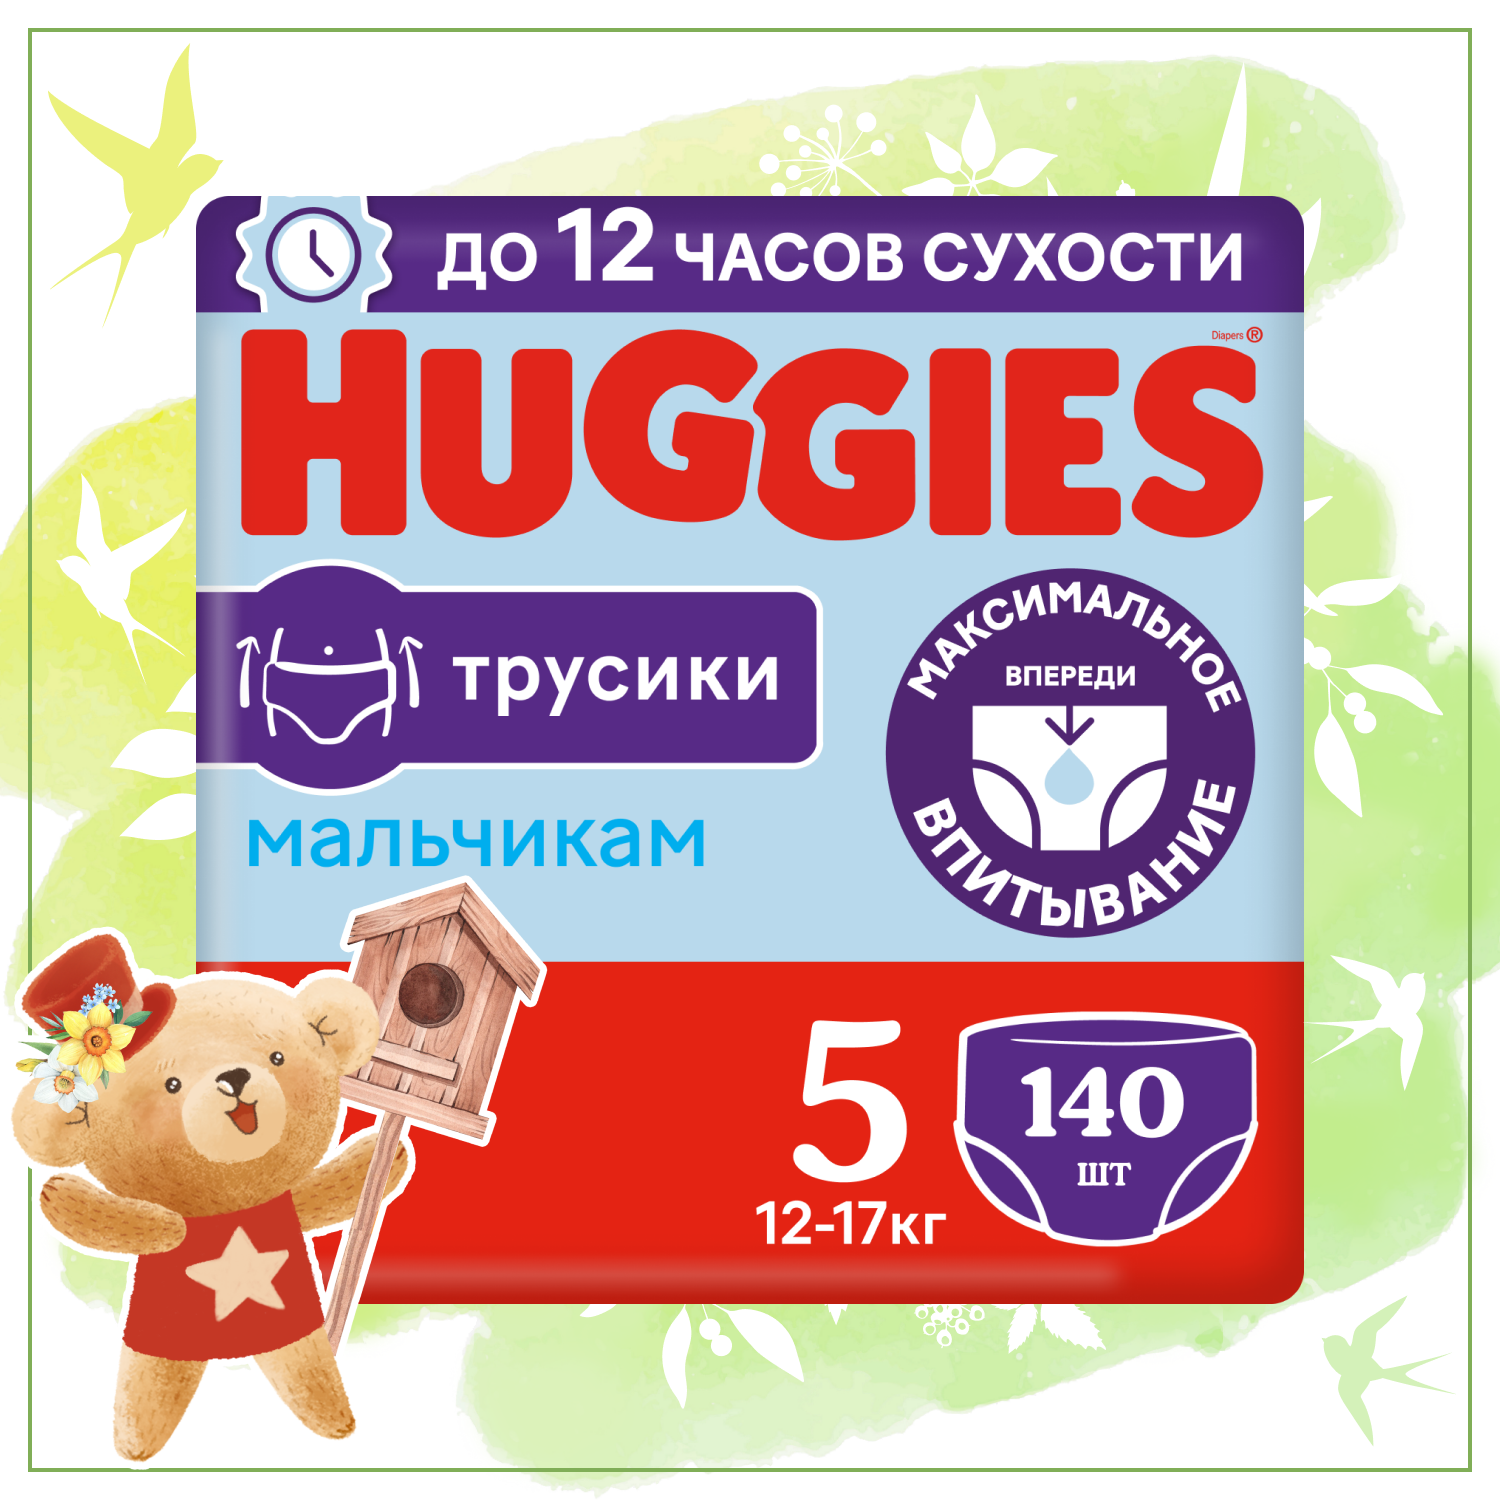 Huggies трусики для мальчиков 5 (12-17 кг), 140 шт., белый